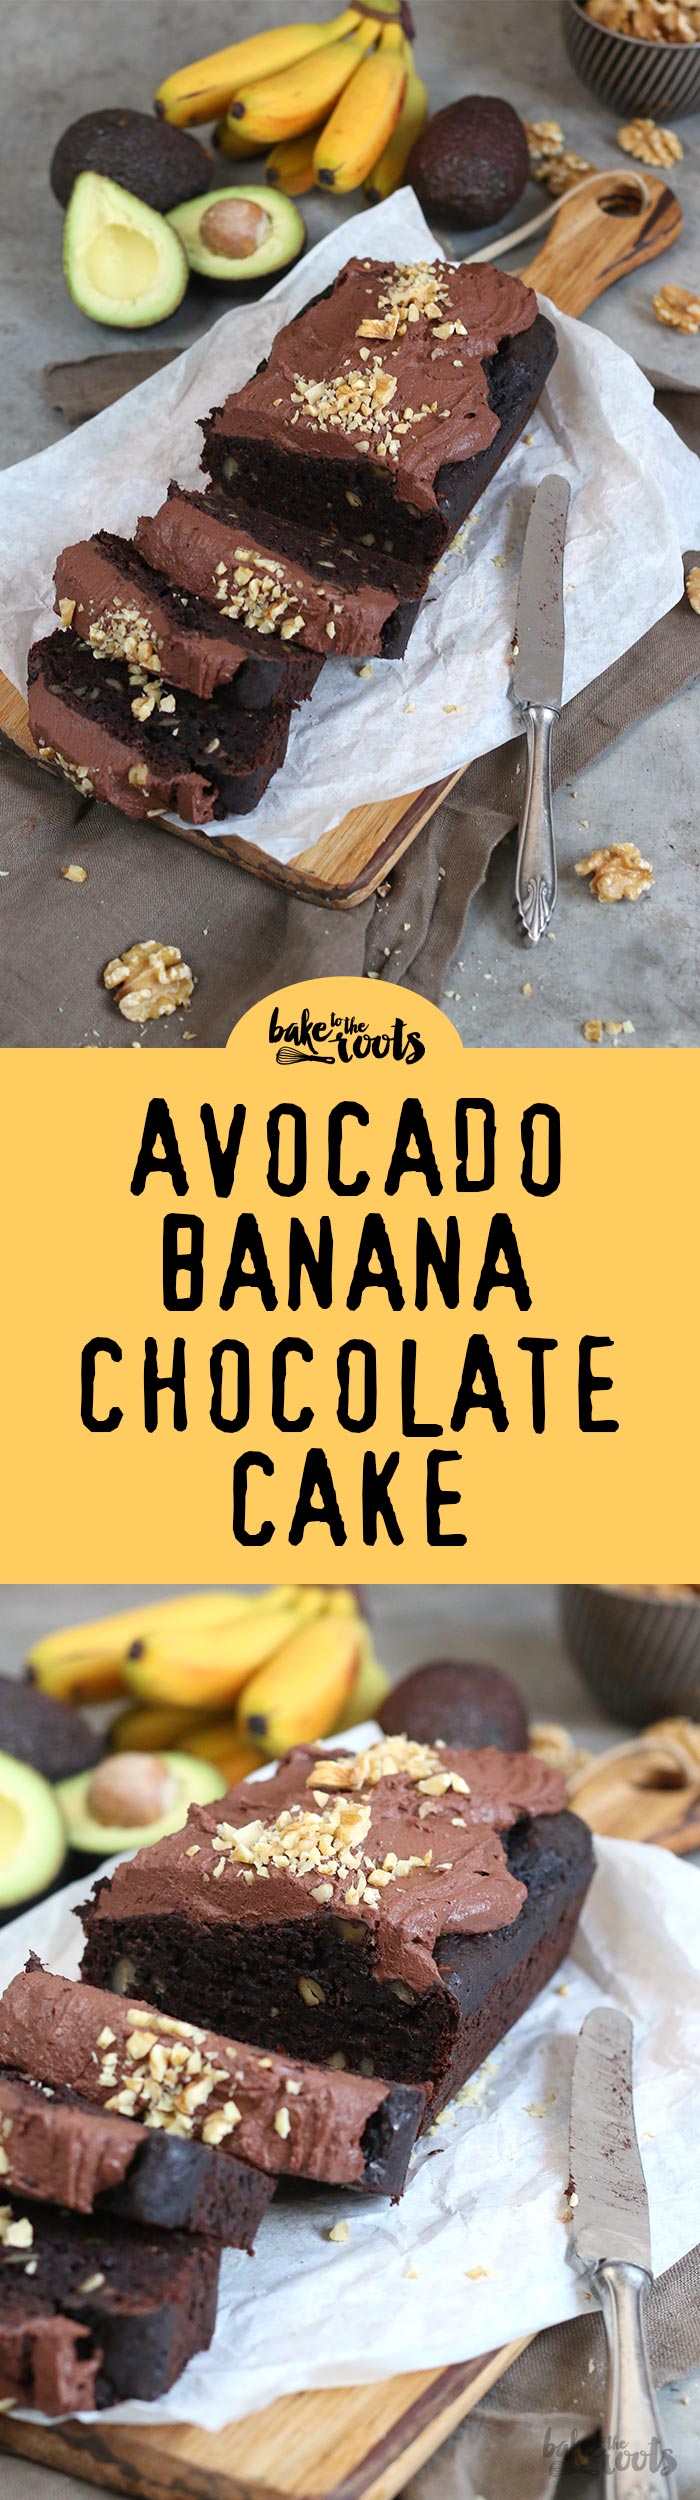 Zuckerreduzierter Schokoladenkuchen, der seine Süße durch Bananen und Avocado bekommt | Bake to the roots